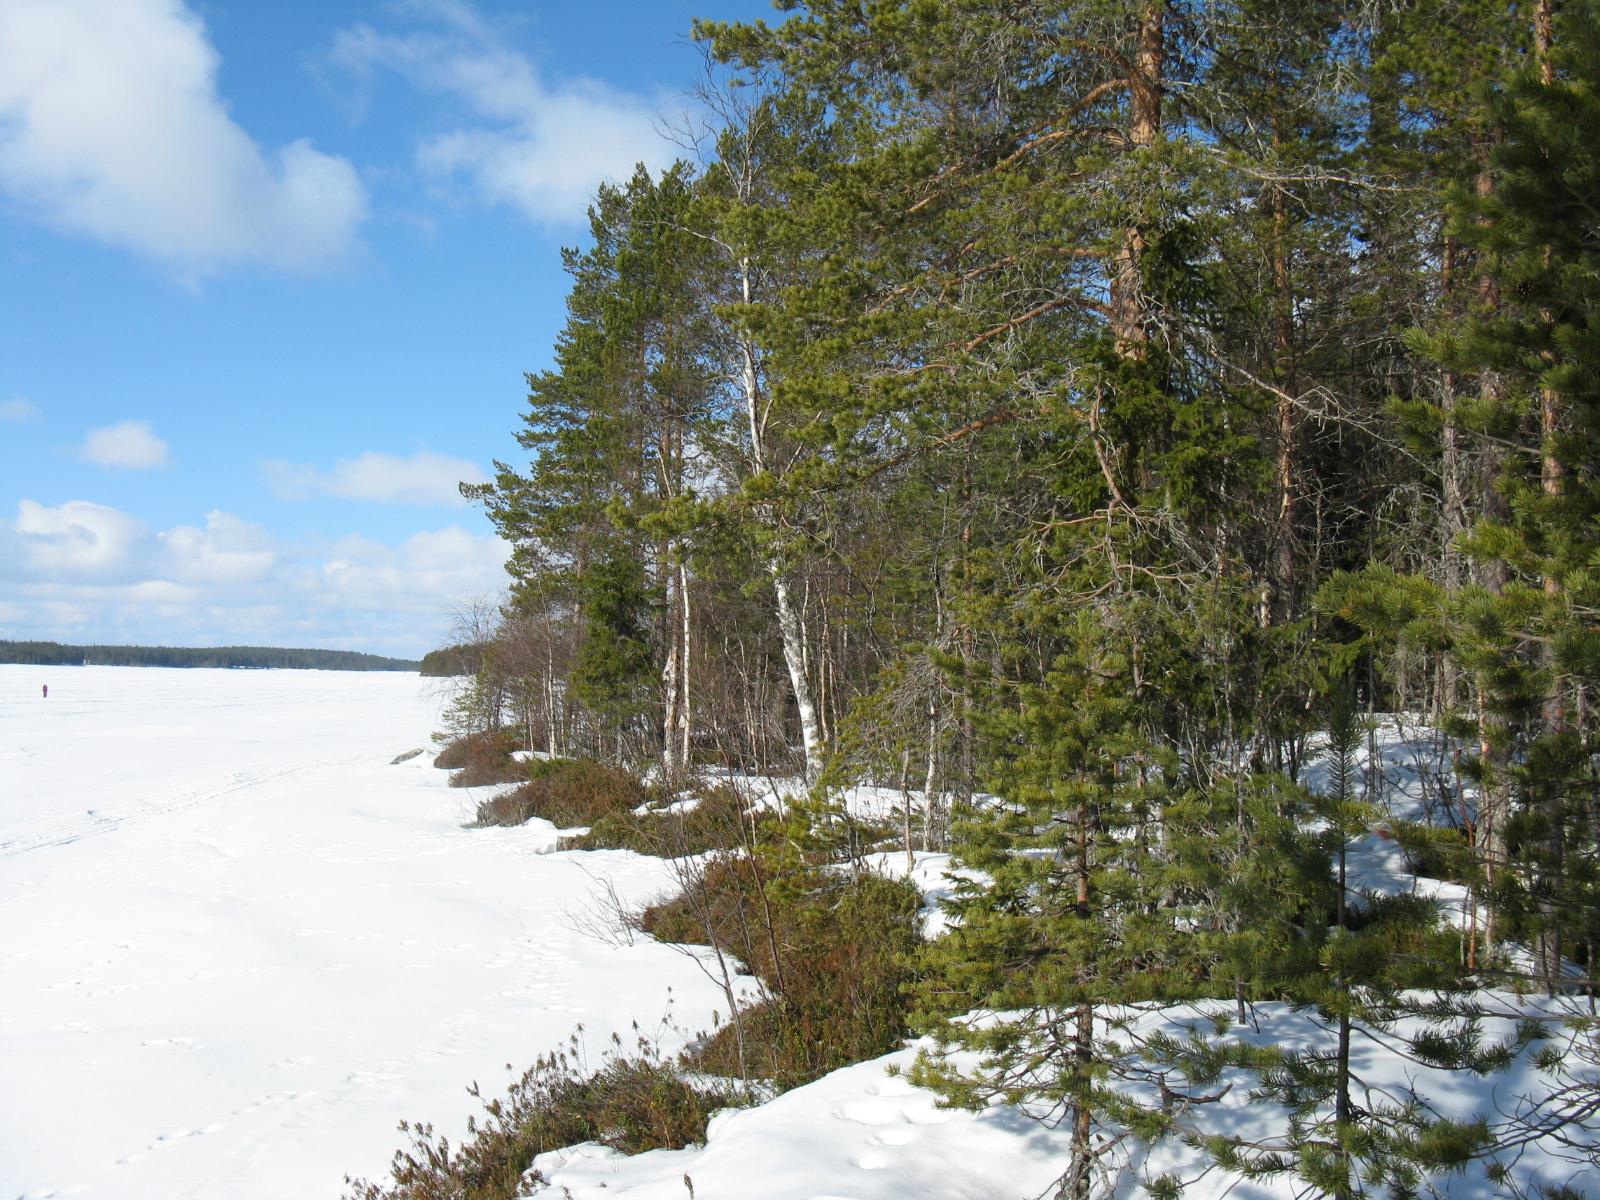 Jäätynyttä järveä reunustaa mäntyvaltainen metsä, jossa on lumipeite maassa.